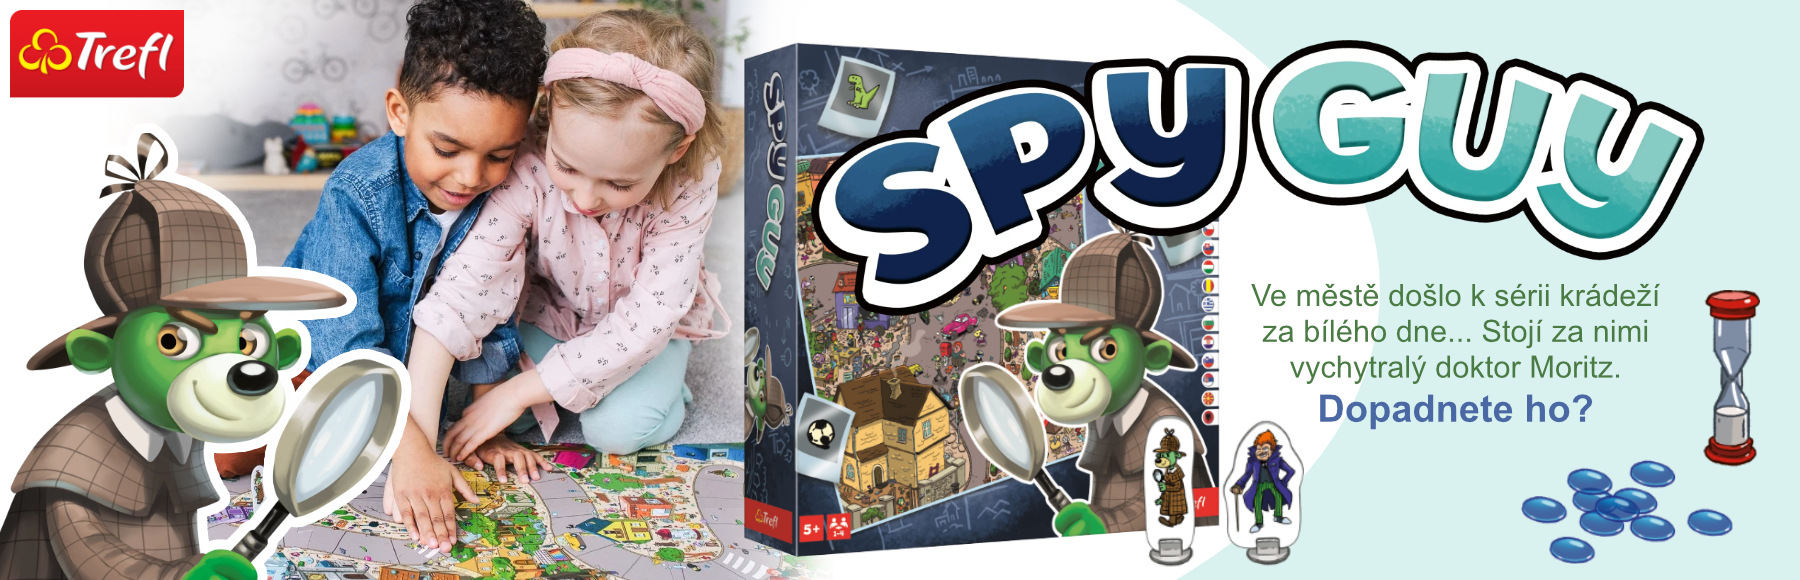 Trefl zábavná hra Spy Guy